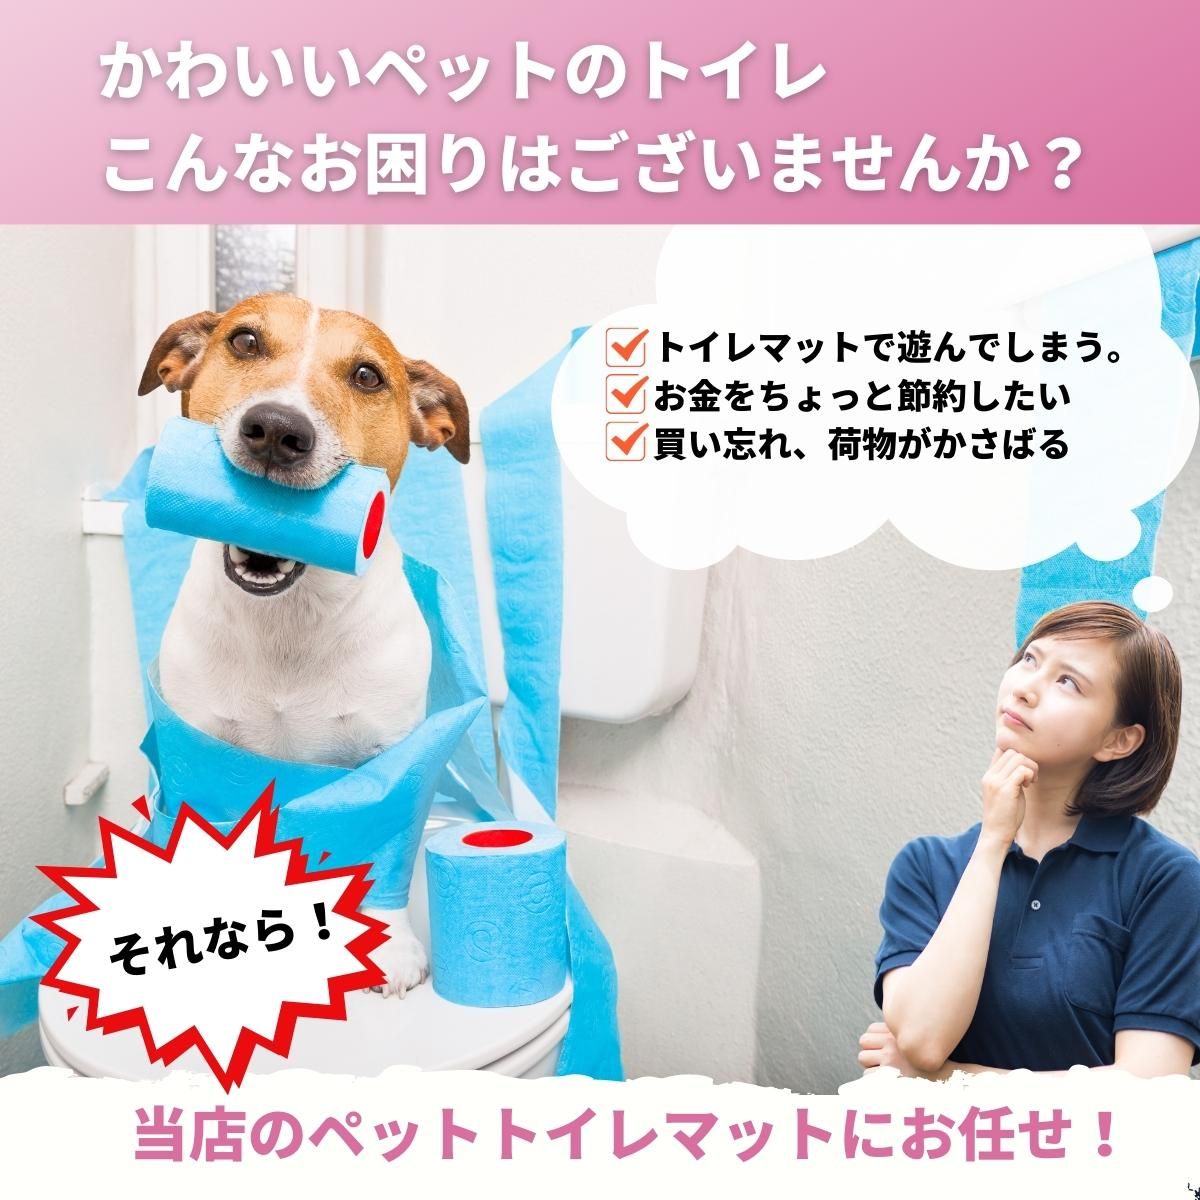  домашнее животное сиденье туалет коврик кошка собака ... домашнее животное простыня .... коврик предотвращение скольжения скорость . утечка предотвращение 